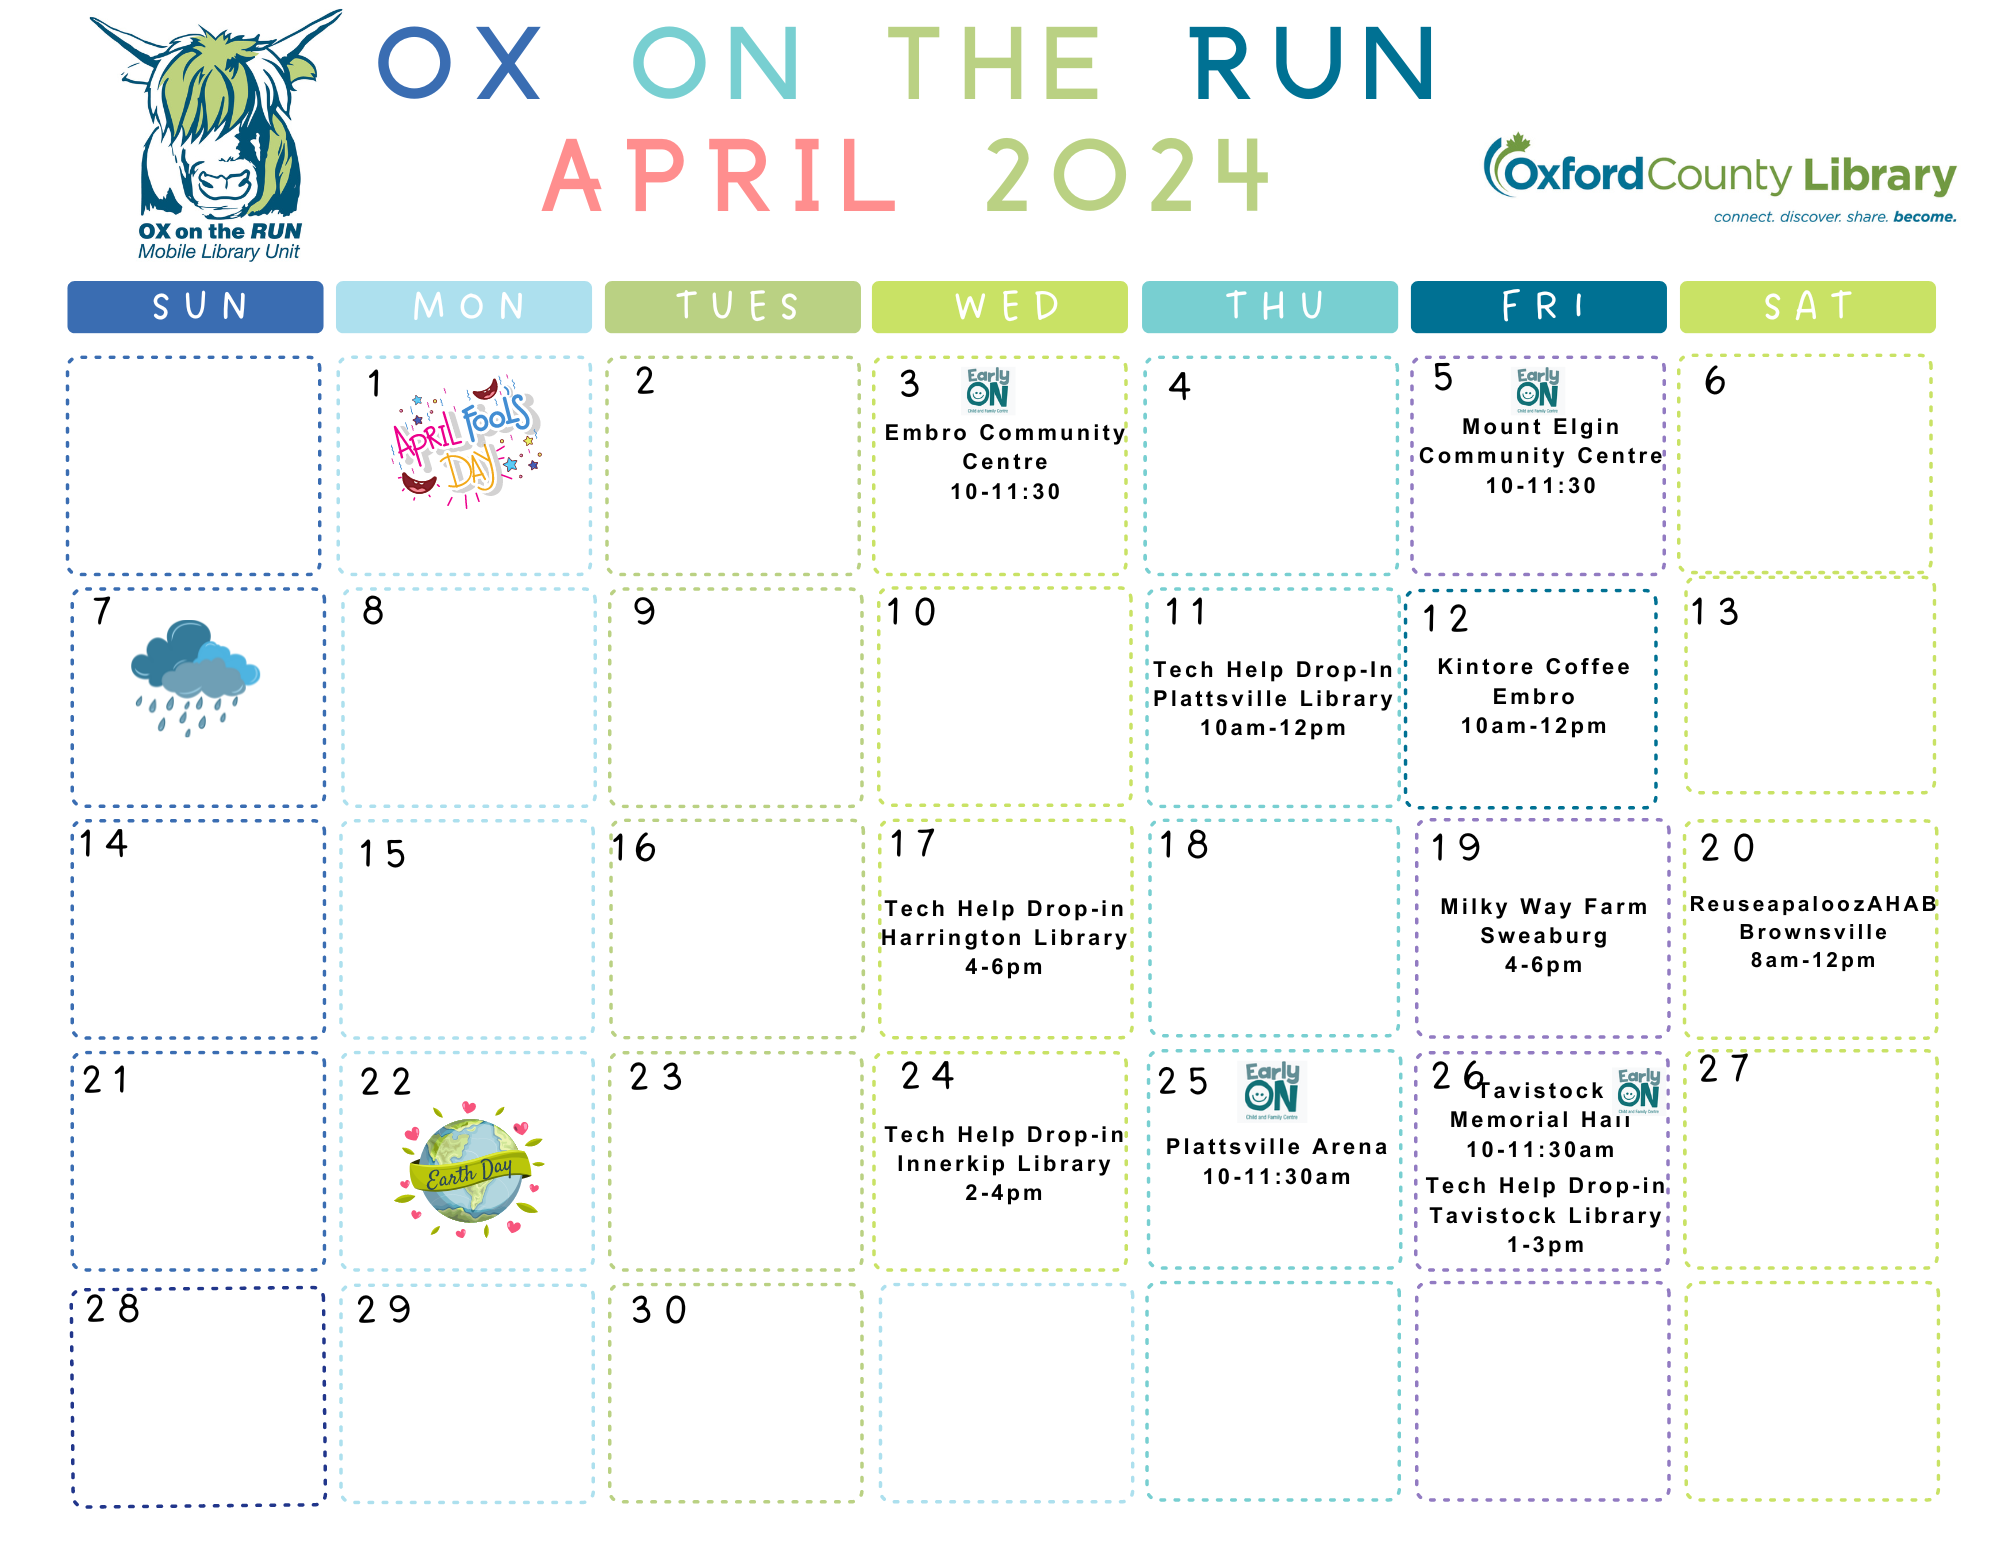 April 2024 Ox on the Run calendar